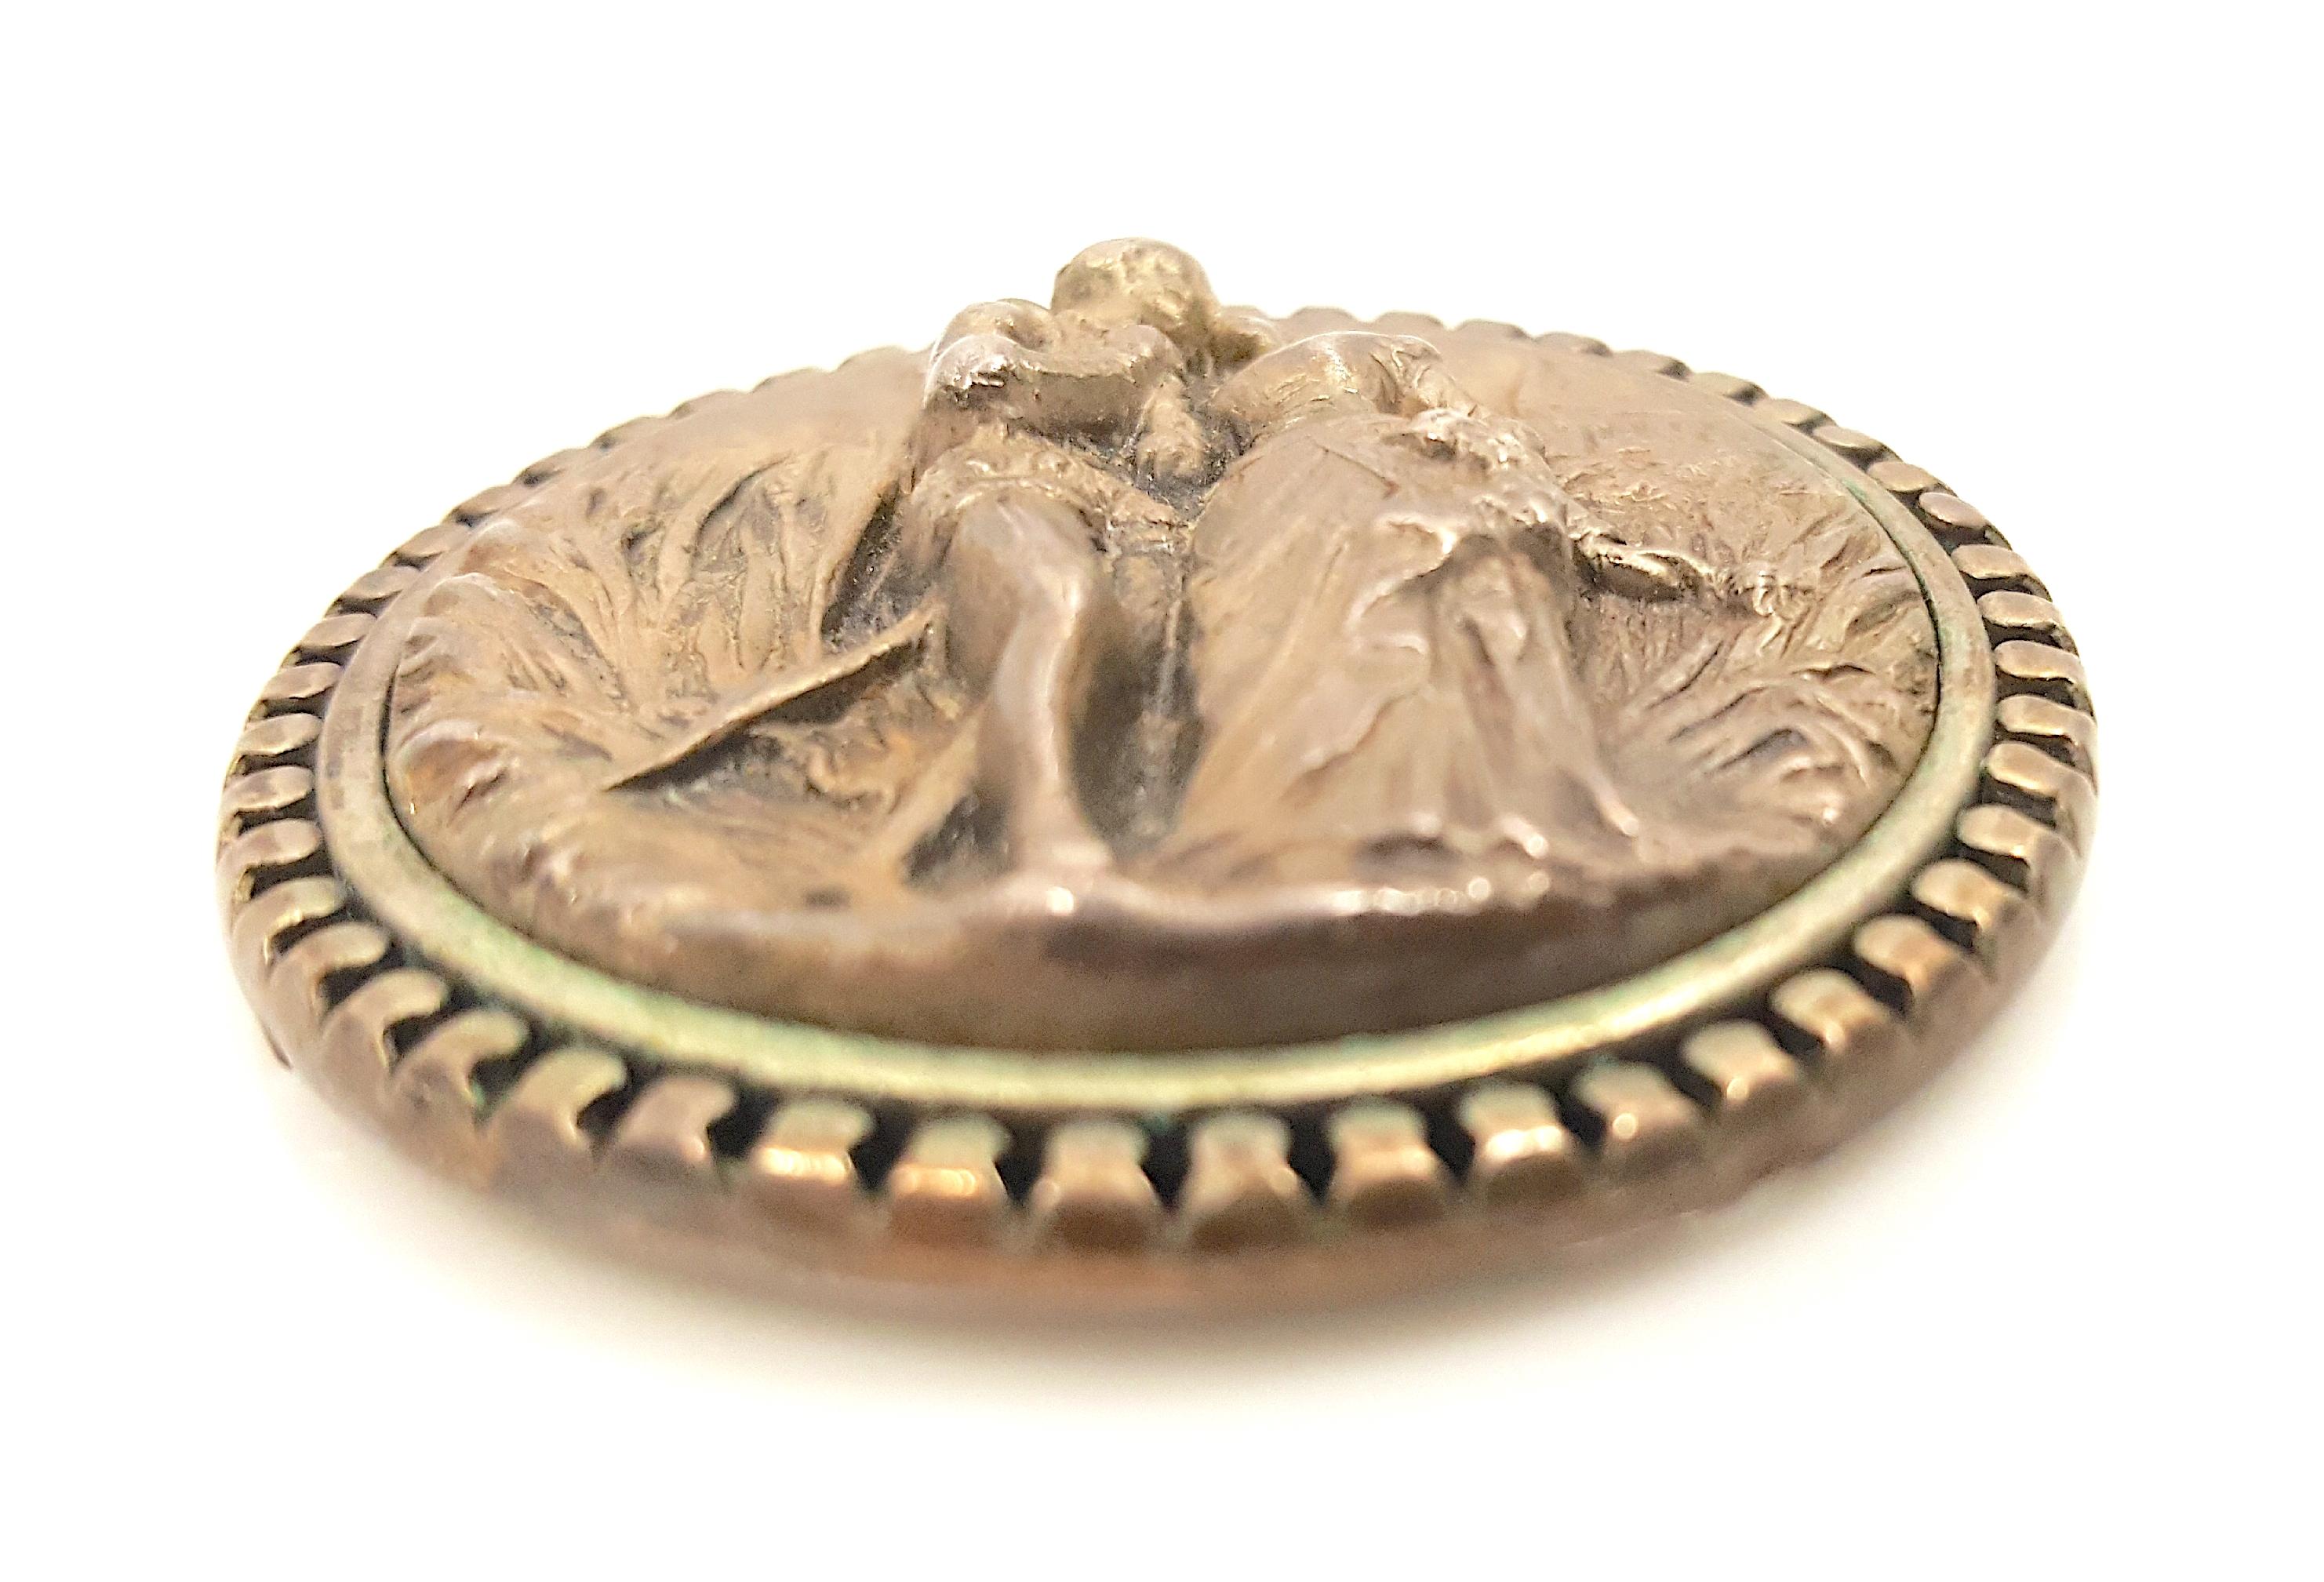 Ce pendentif médaillon rond en argent repoussé de la Renaissance du début du XVIe siècle représente une rencontre romantique dans un paysage rural entre un homme et une femme souriante portant des vêtements de la noblesse européenne, notamment un